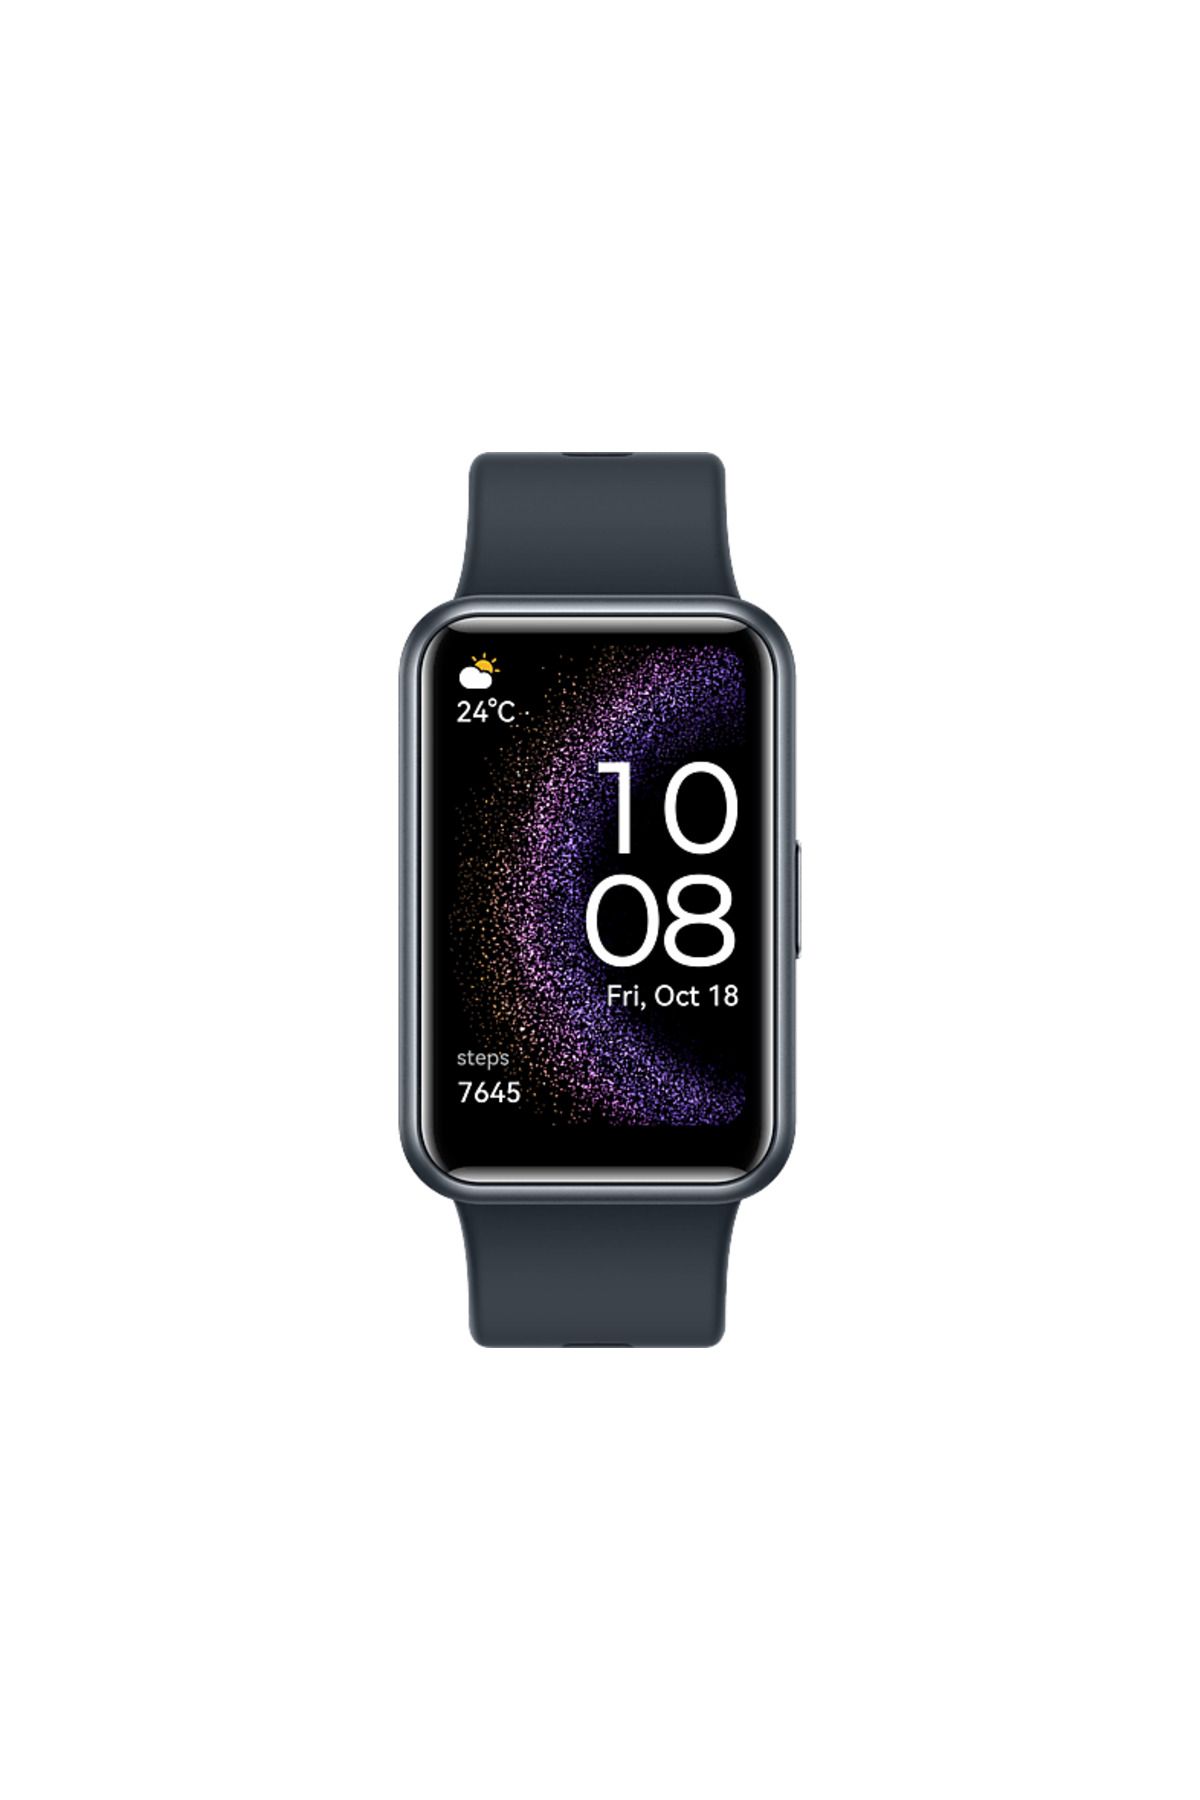 Huawei Huaweı Watch Fıt Specıal Edıtıon Akıllı Saat Gece Sıyahı